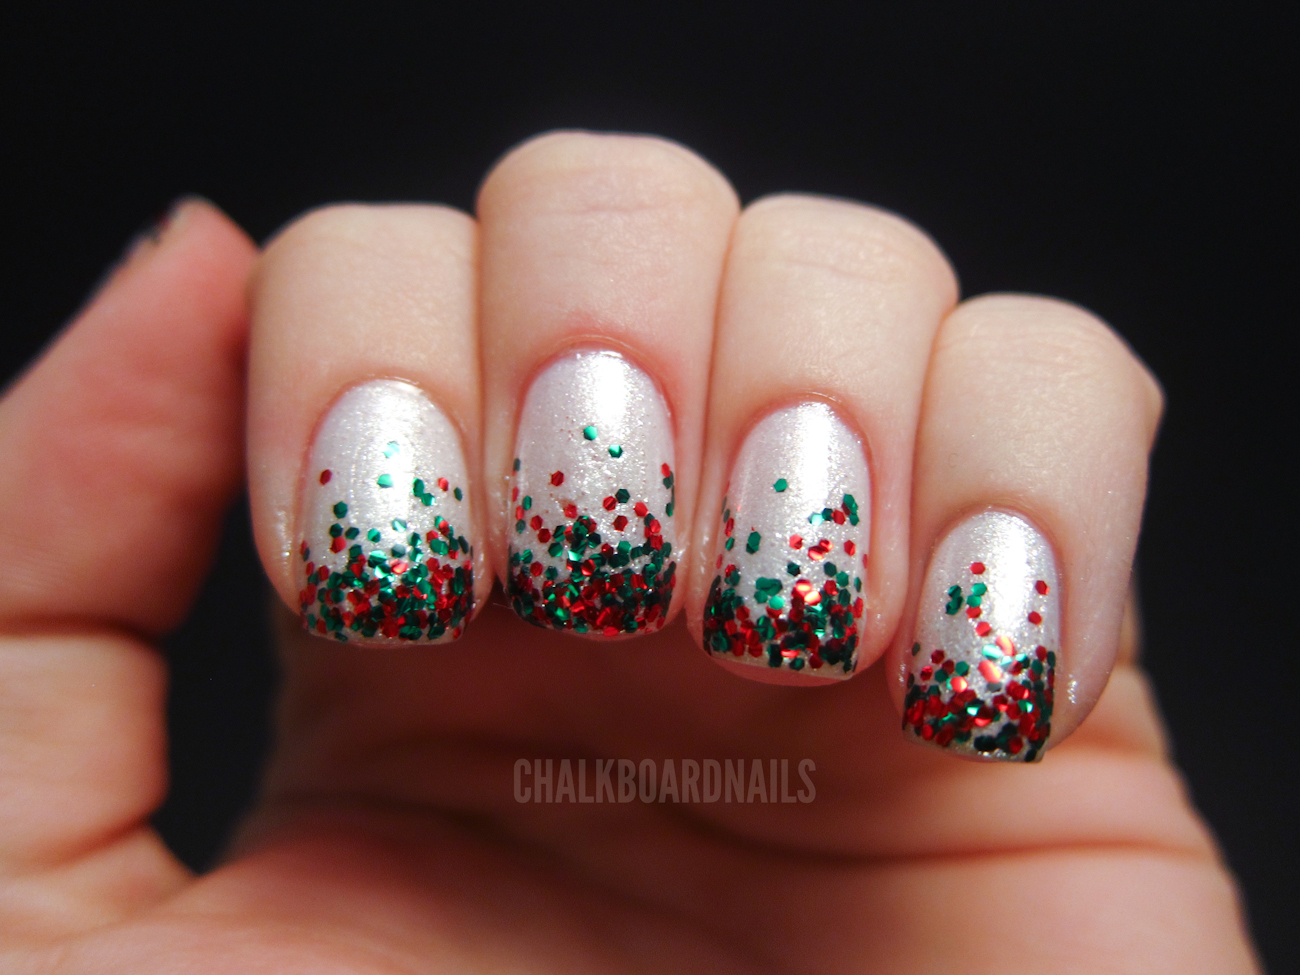 My Christmas Nails  Chalkboard Nails  Nail Art Blog